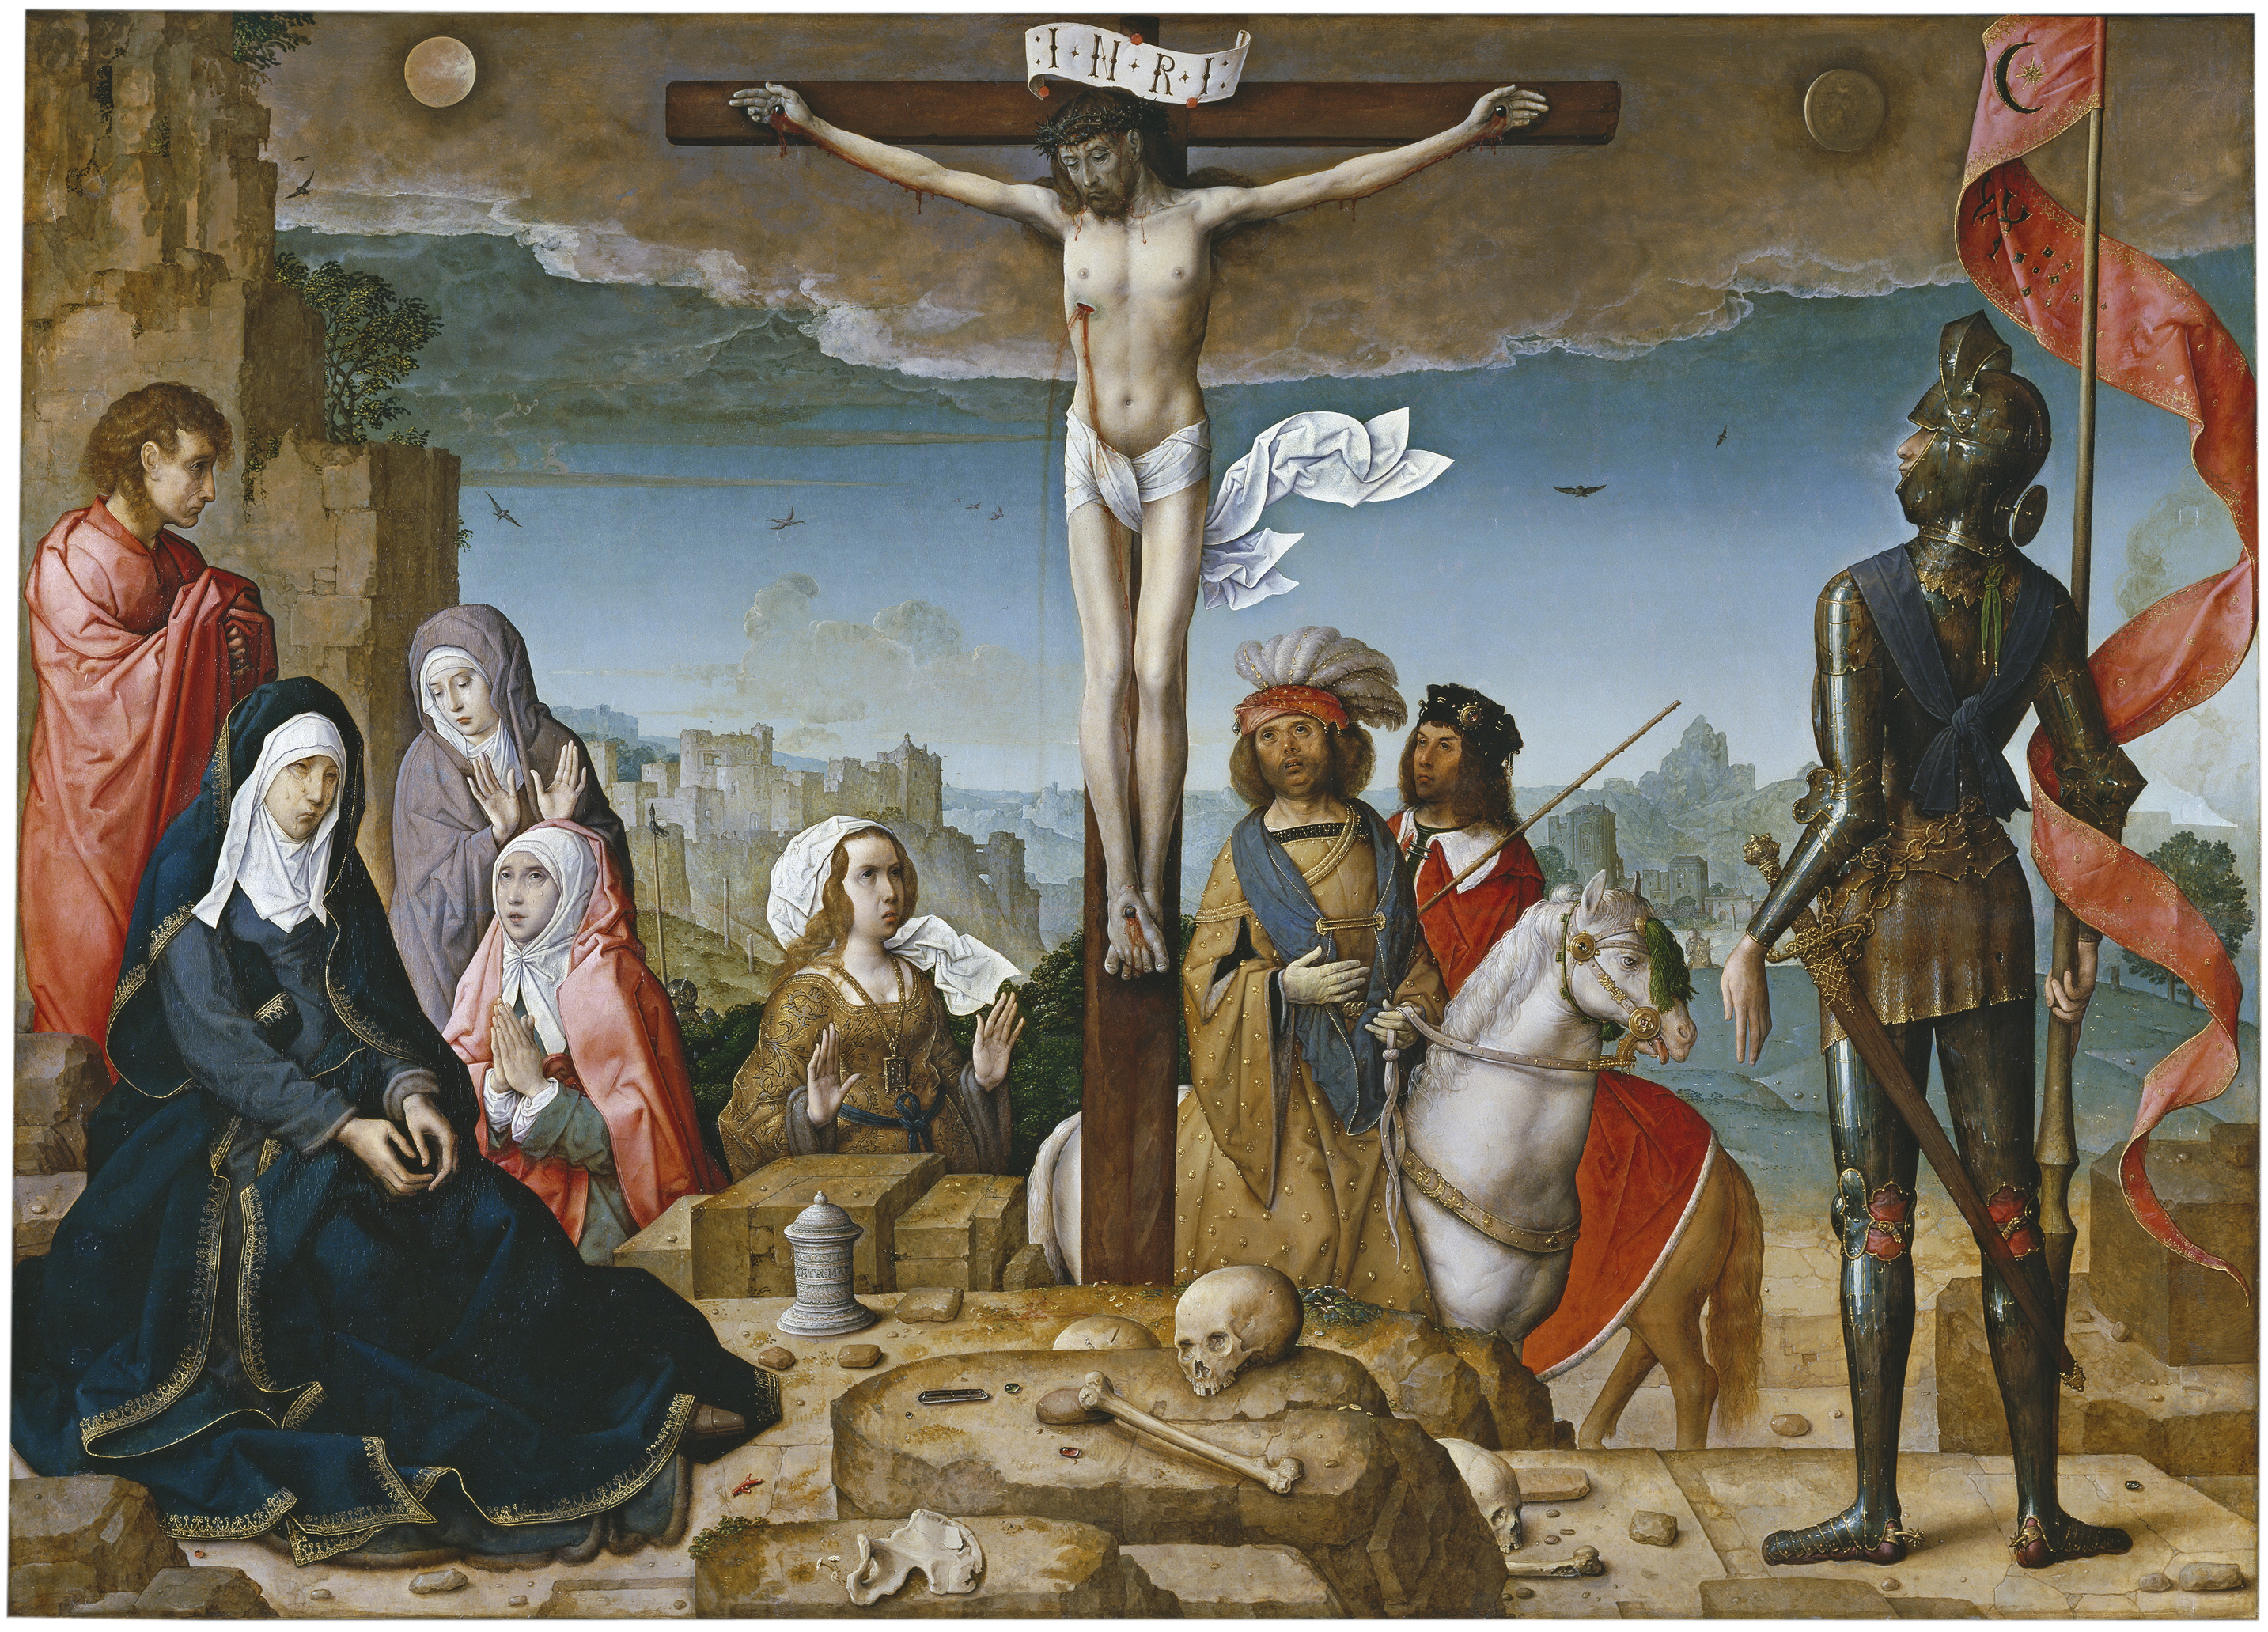 'La crucifixión', de Juan de Flandes, tabla que estuvo situada en la calle central del retablo de la Catedral de Palencia. Hoy se encuentra en el Museo del Prado.